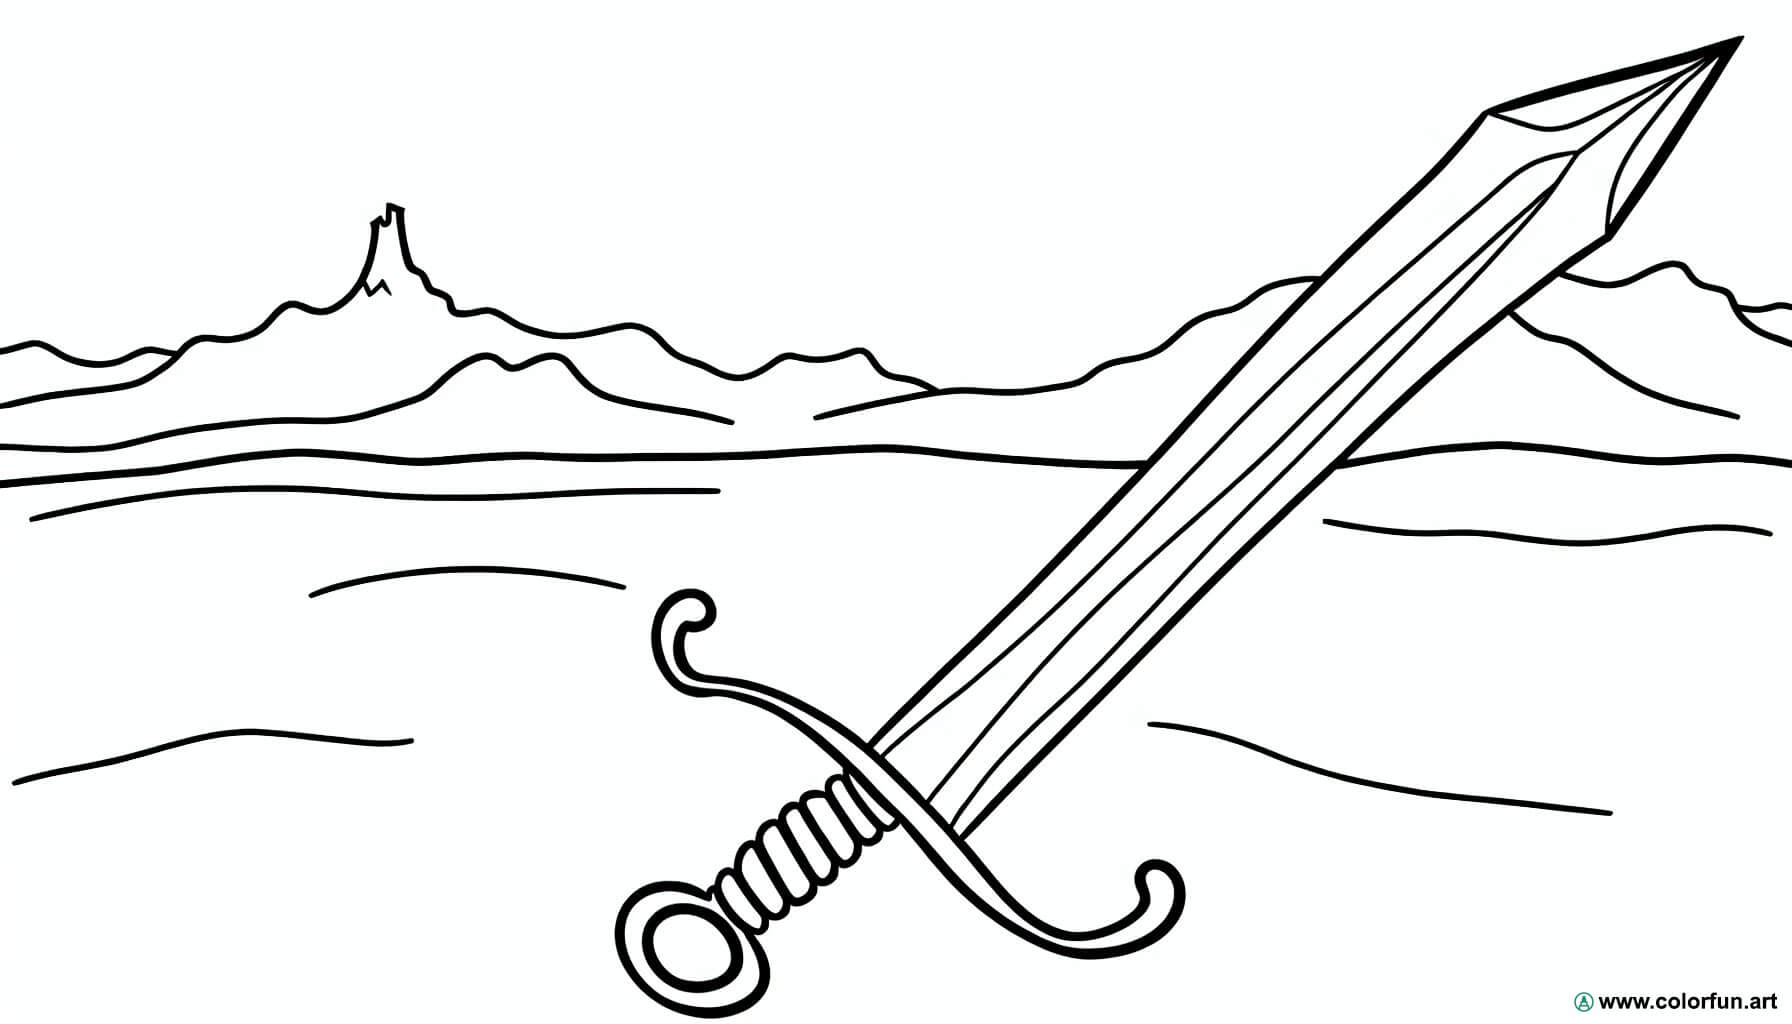 dibujo para colorear espada medieval